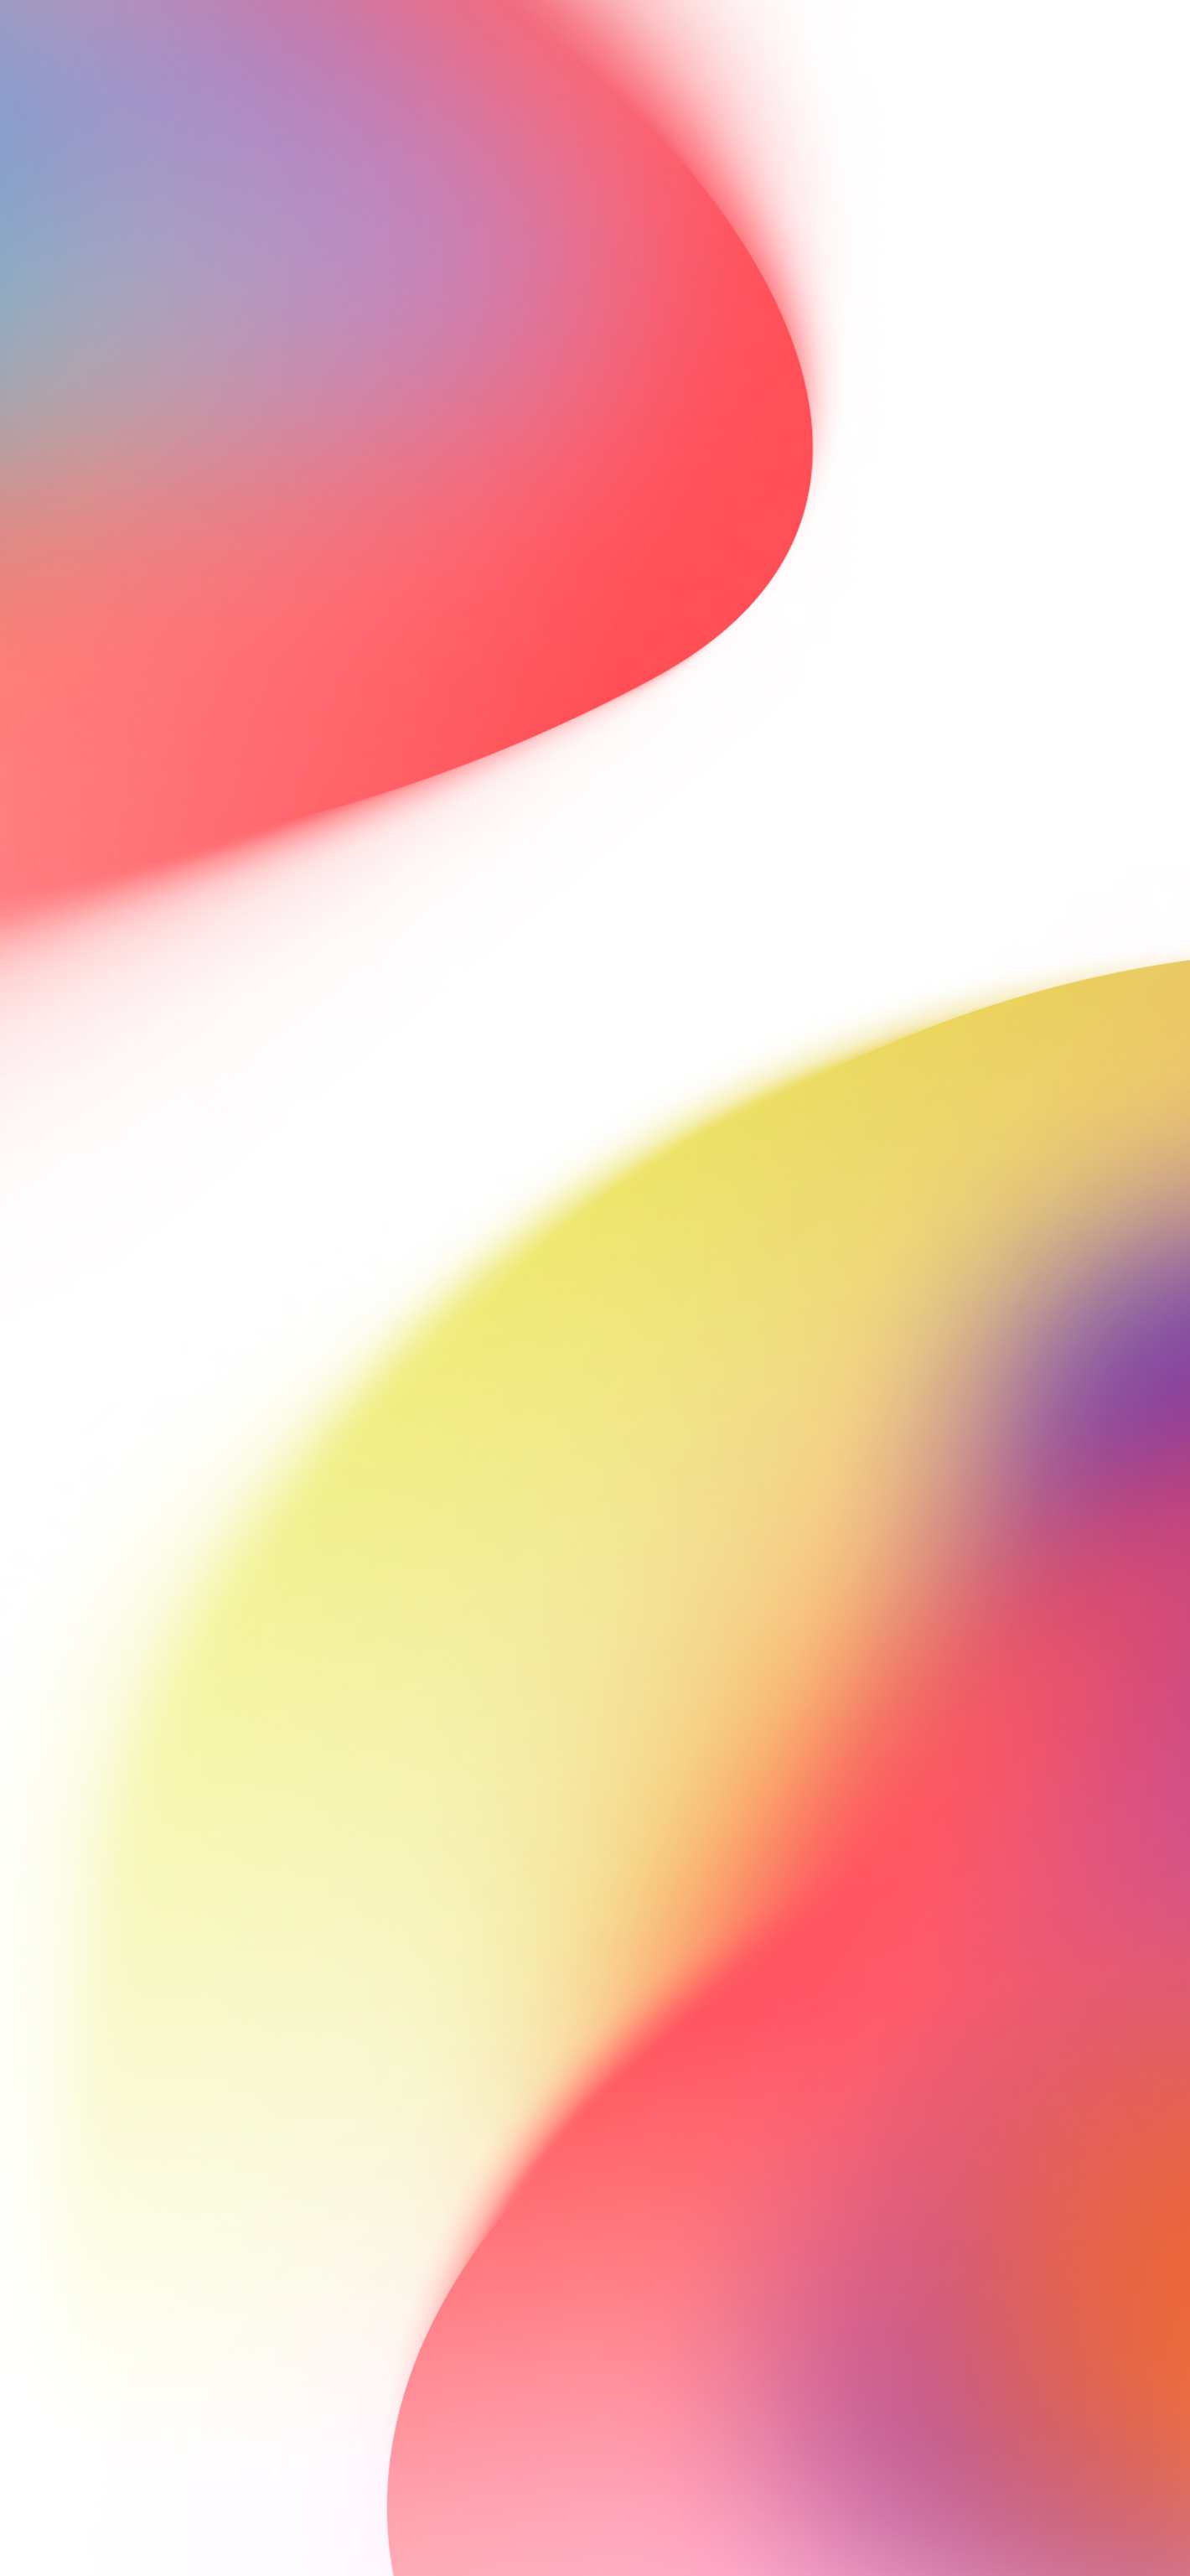 Đừng bỏ lỡ Concept Wallpaper (Đỏ - Ánh sáng) trong iOS 16 tại Trung tâm hình nền. Bộ hình ảnh phong cách này sẽ khiến màn hình của bạn trở nên đẹp hơn, nổi bật hơn và dễ dàng thu hút mọi ánh nhìn. Tải xuống và trang trí cho chiếc điện thoại của bạn với hình nền độc đáo và đẳng cấp này.